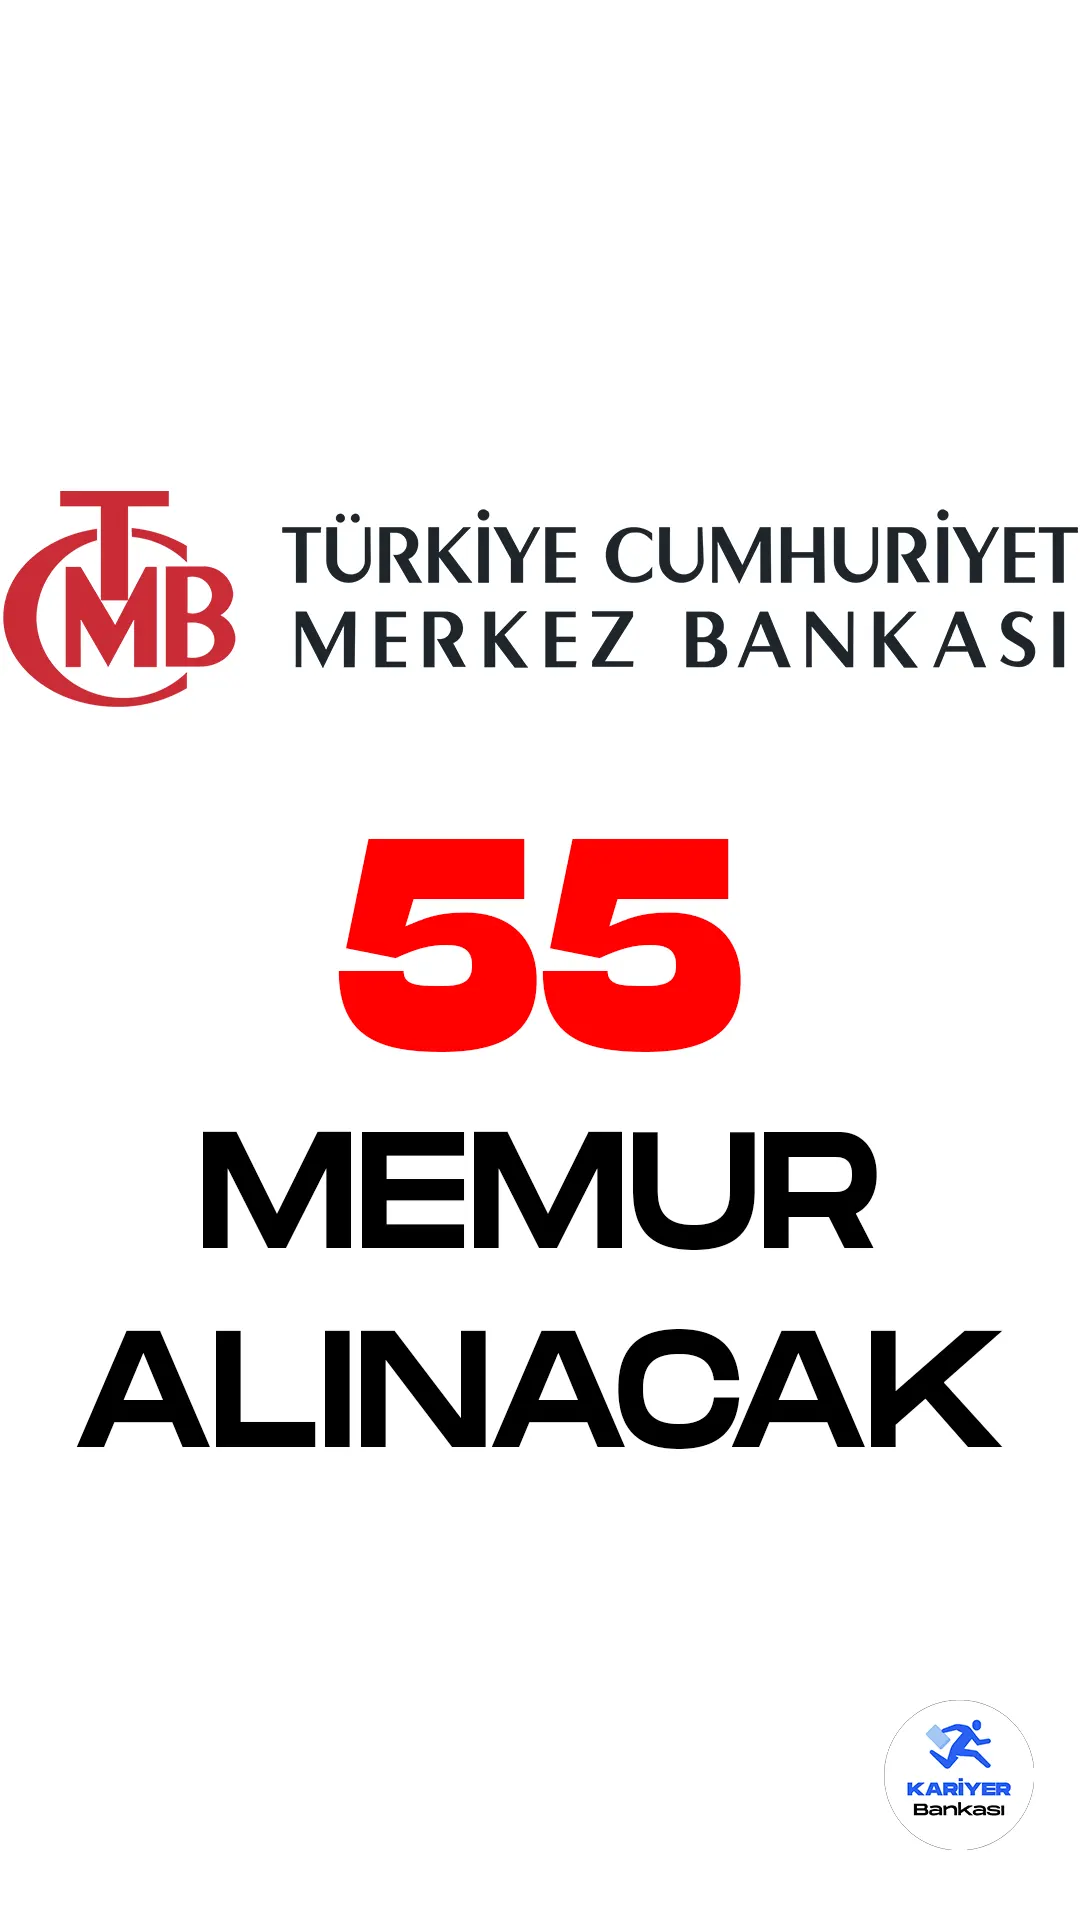 Türkiye Cumhuriyet Merkez Bankası memur alımı başvuruları 23 Nisan'da sona erecek. Merkez Bankası resmi sayfasından yayımlanan duyuruda, Merkez Bankasına 55 memur alımı yapılacağı aktarıldı. Başvurular 7 Nisan itibariyle başladı. Başvuru yapacak adayların belirtilen şartları taşıması gerekmektedir.